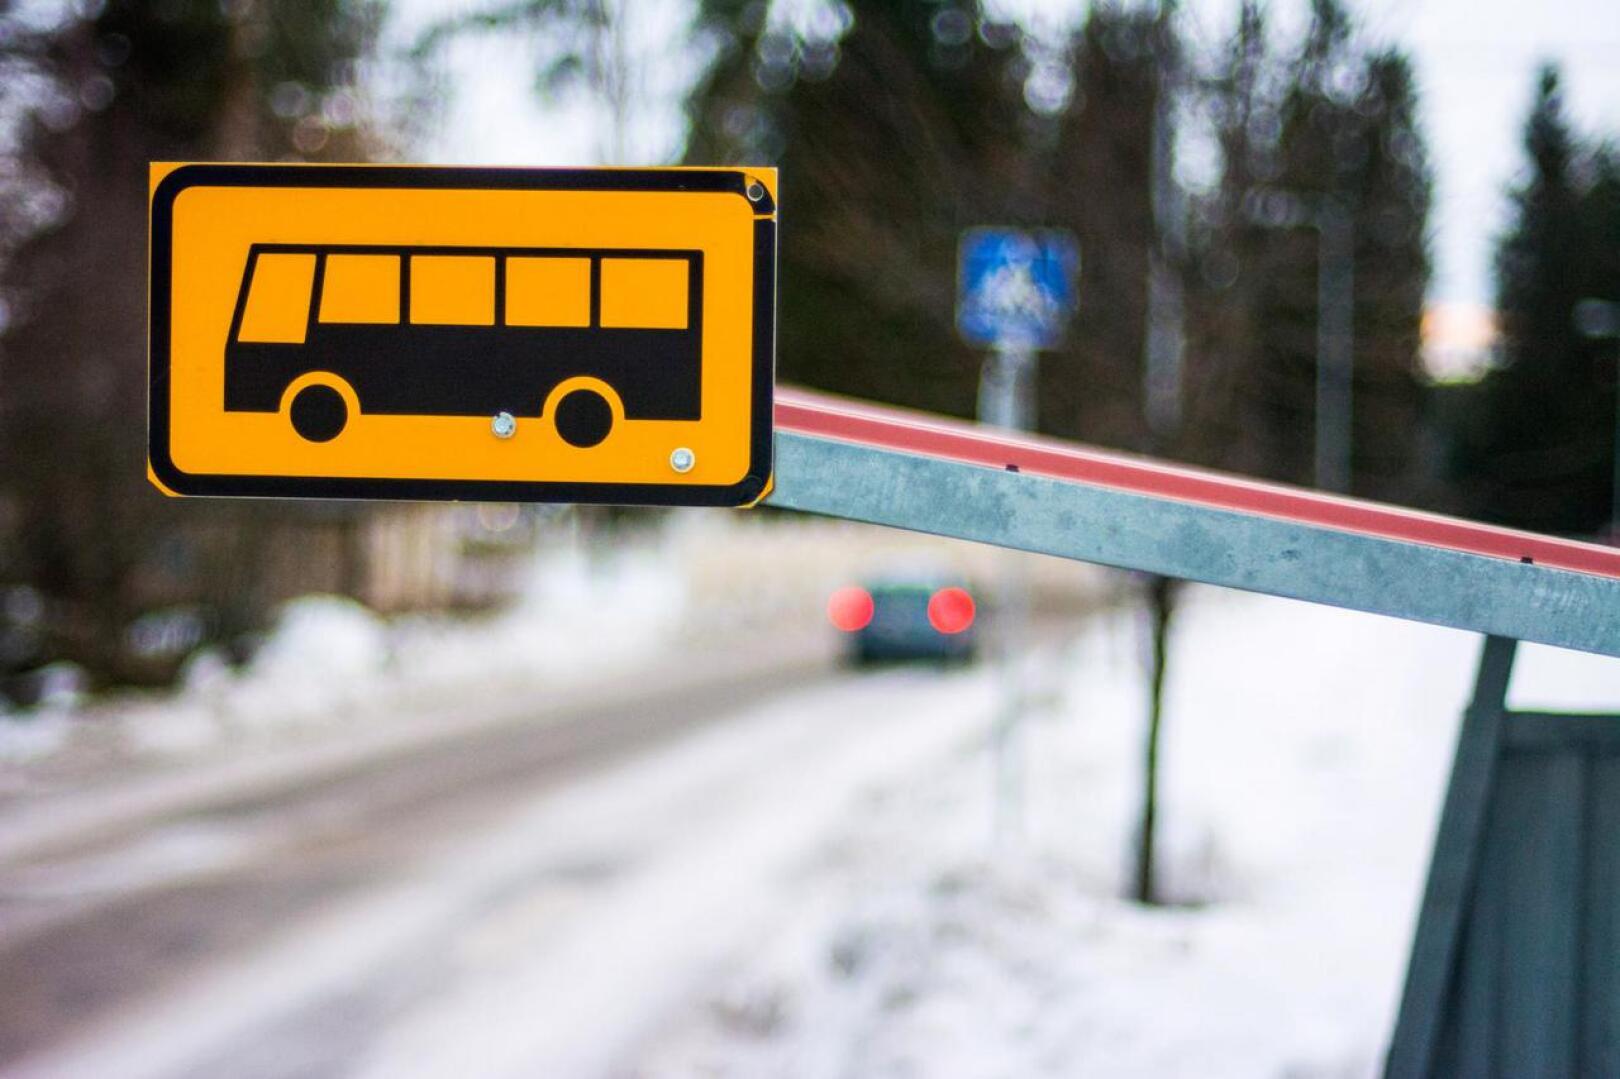 Kuopion bussiturma on käynnistänyt vilkkaan keskustelun seniorikuljettajien ajokunnon testaamisesta.